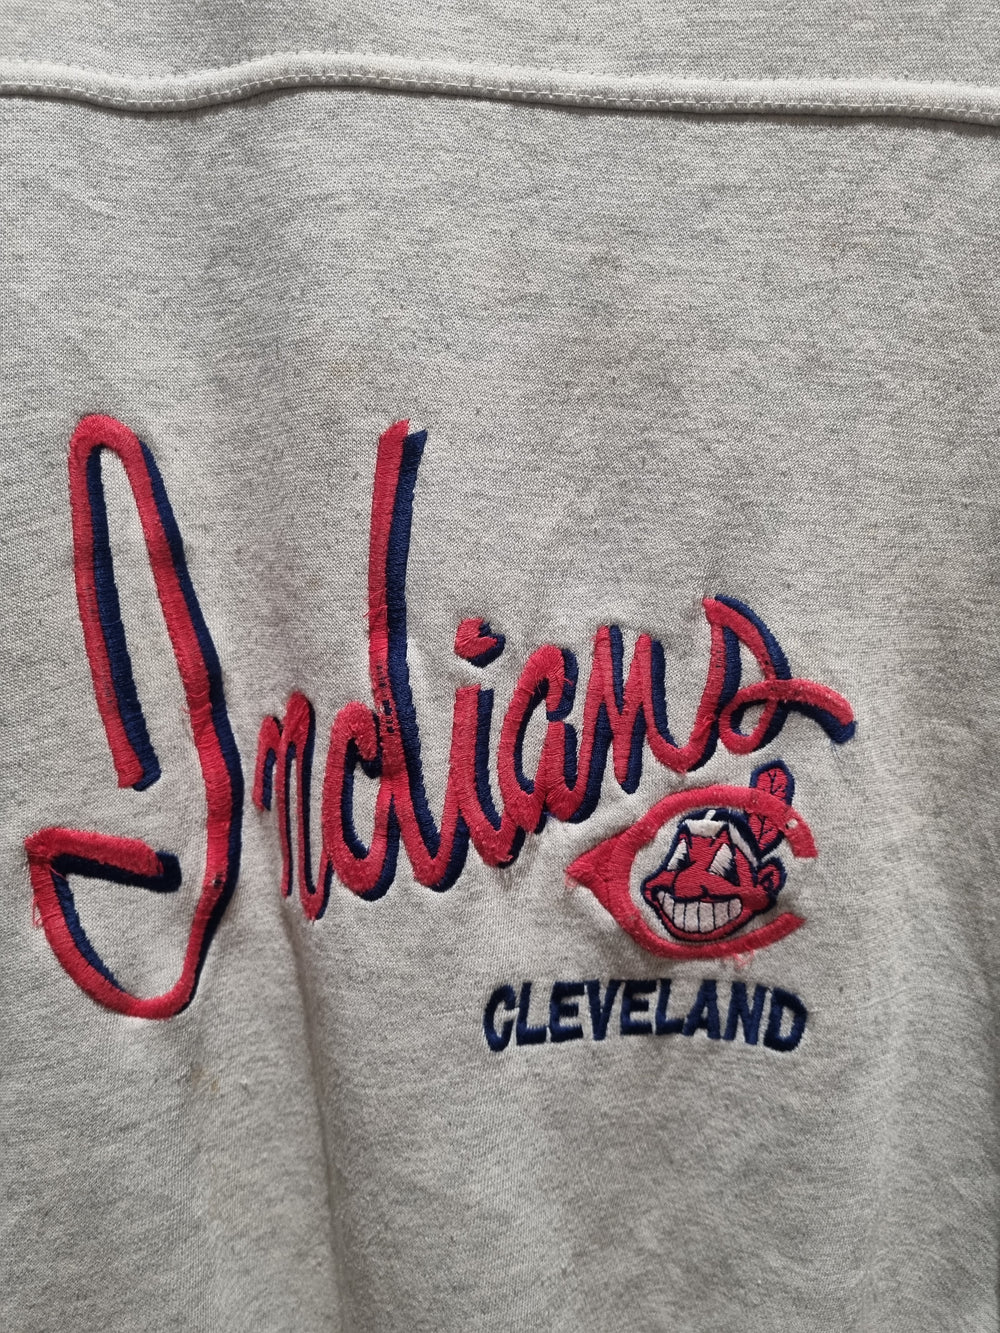 Cleveland Indians Large